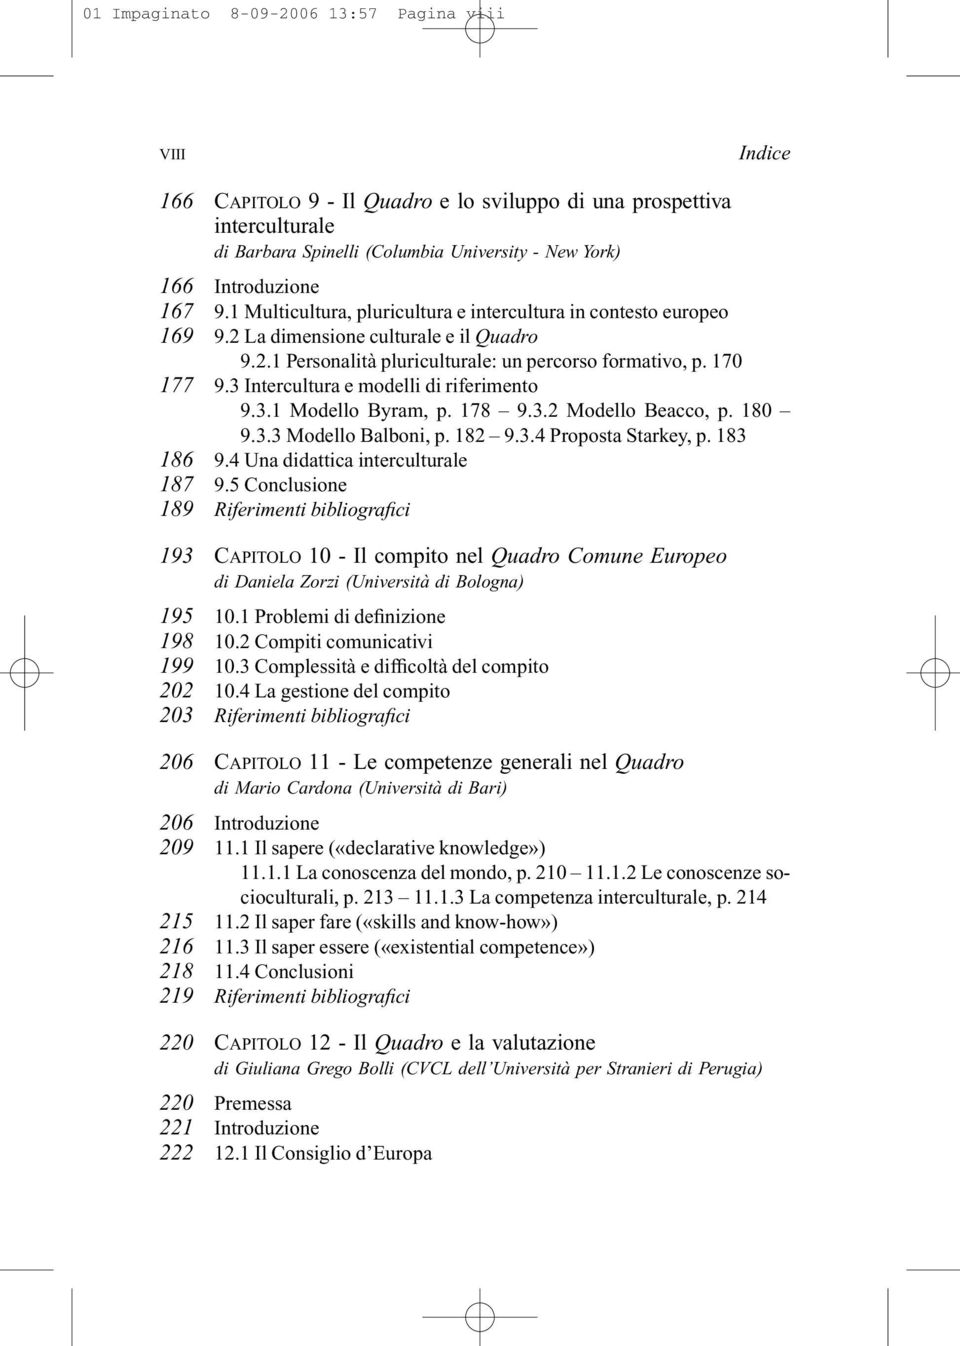 3 Intercultura e modelli di riferimento 9.3.1 Modello Byram, p. 178 9.3.2 Modello Beacco, p. 180 9.3.3 Modello Balboni, p. 182 9.3.4 Proposta Starkey, p. 183 186 9.